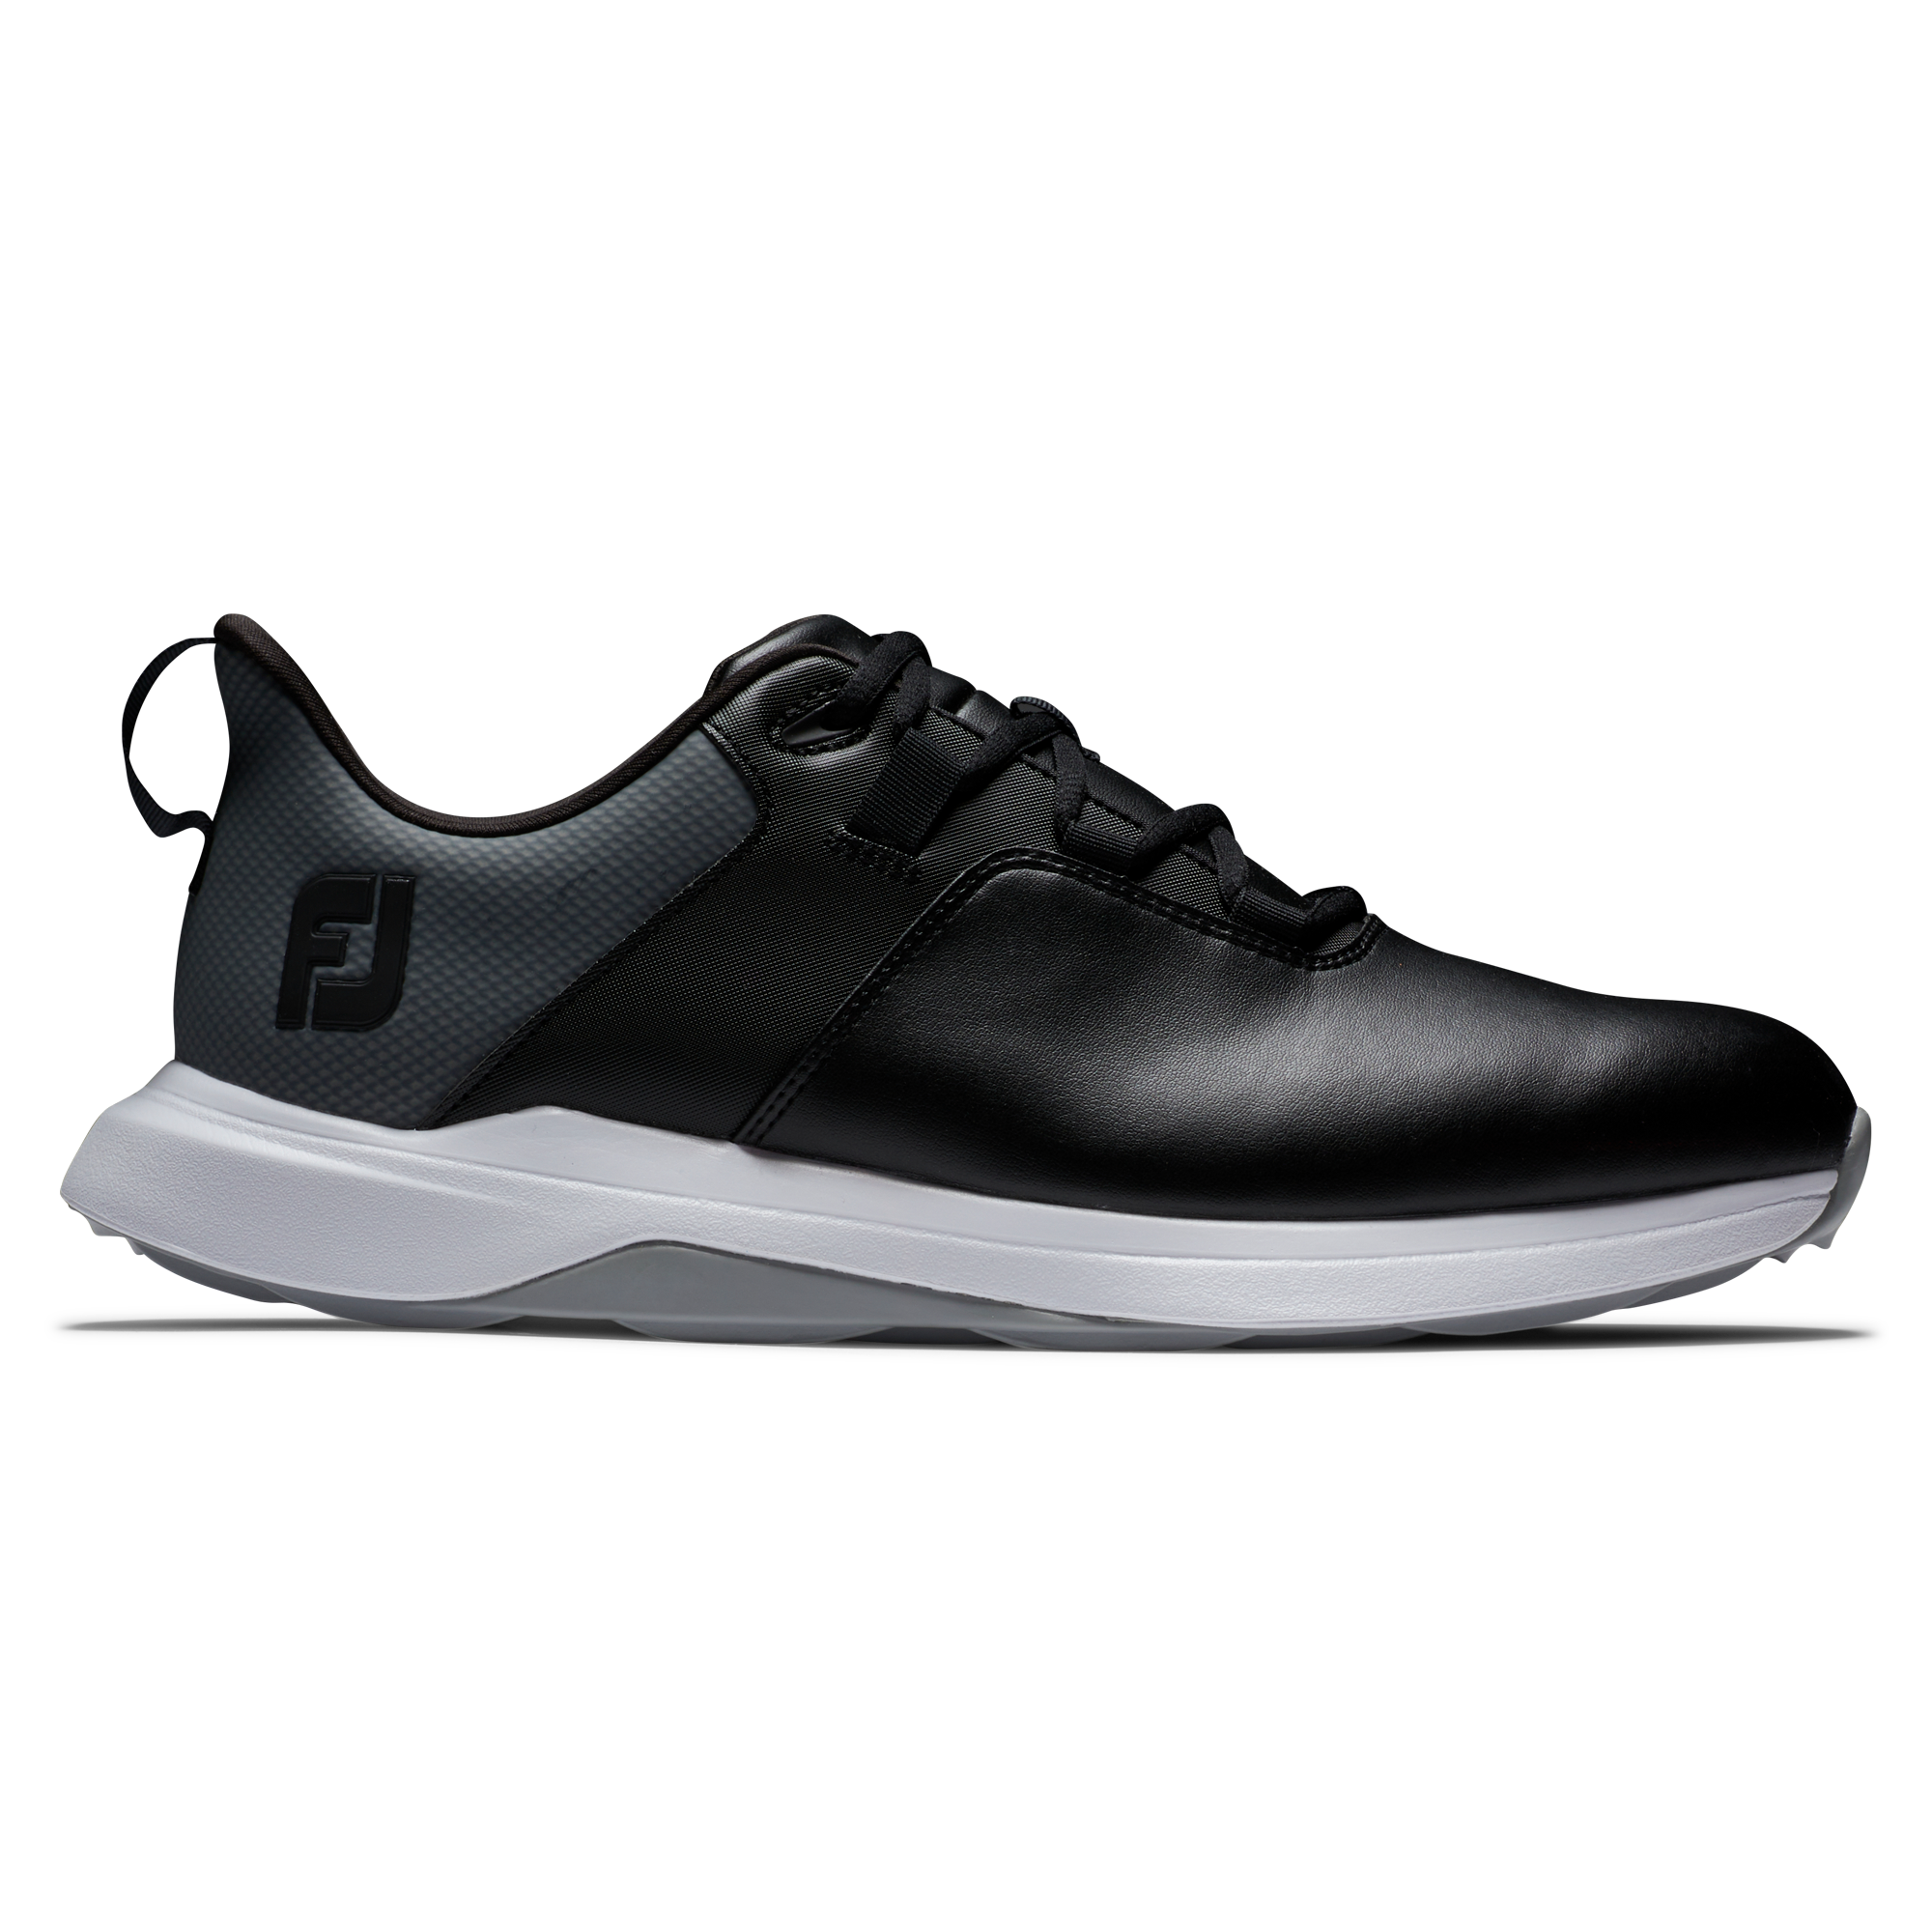 FootJoy ProLite pánské golfové boty, černé, vel. 6,5 UK